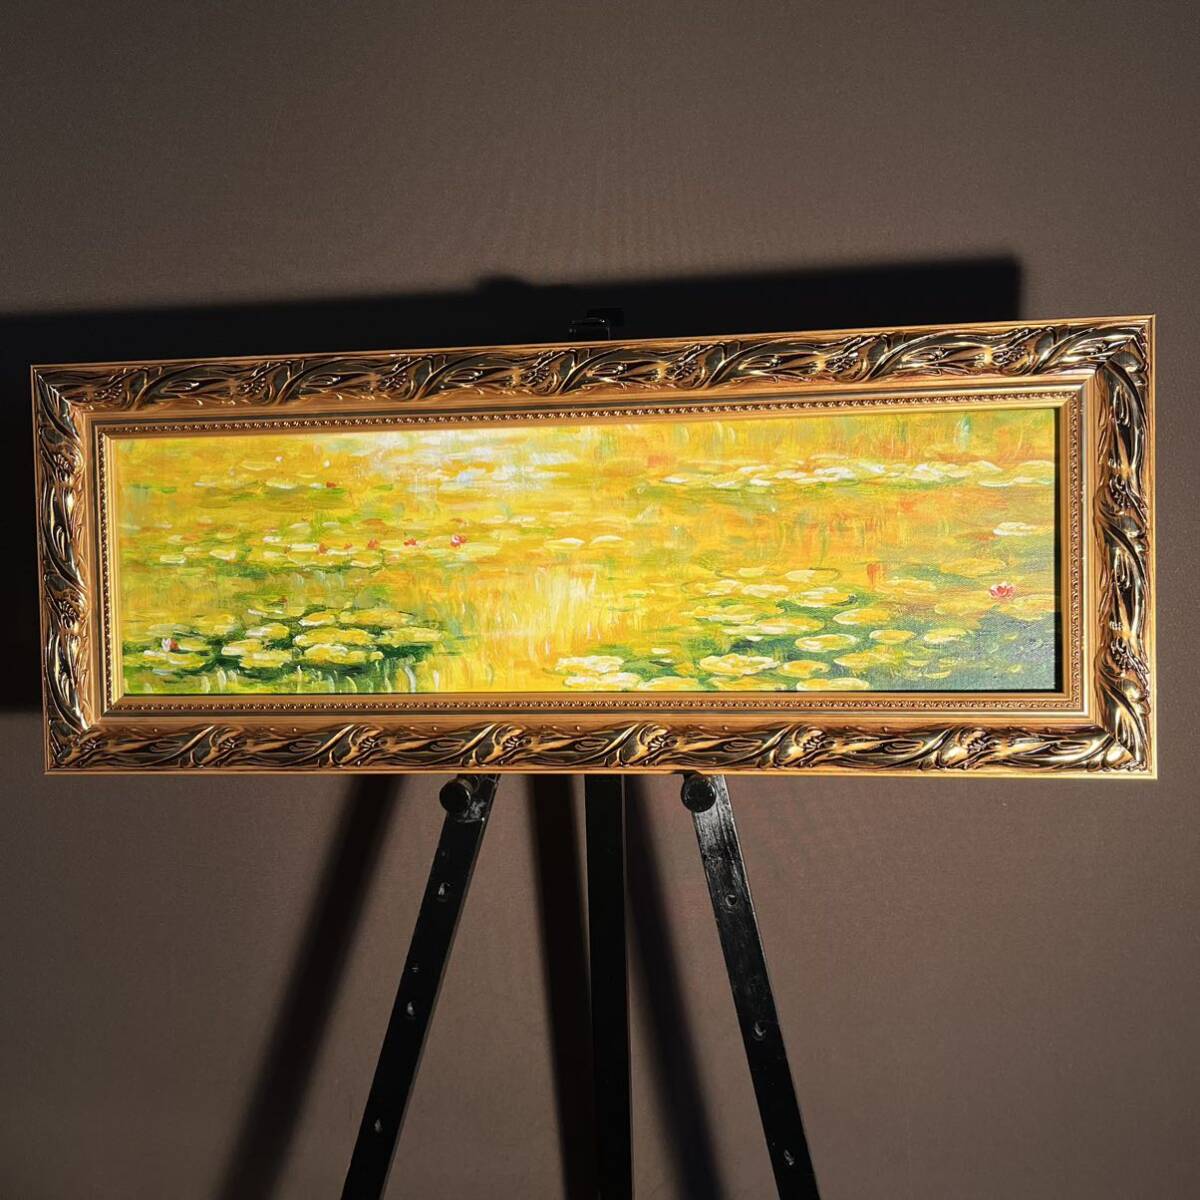 Peinture à l'huile manuscrite Claude Monet Étang aux nénuphars Peinture à l'huile intérieure encadrée dorée, peinture, peinture à l'huile, peinture abstraite